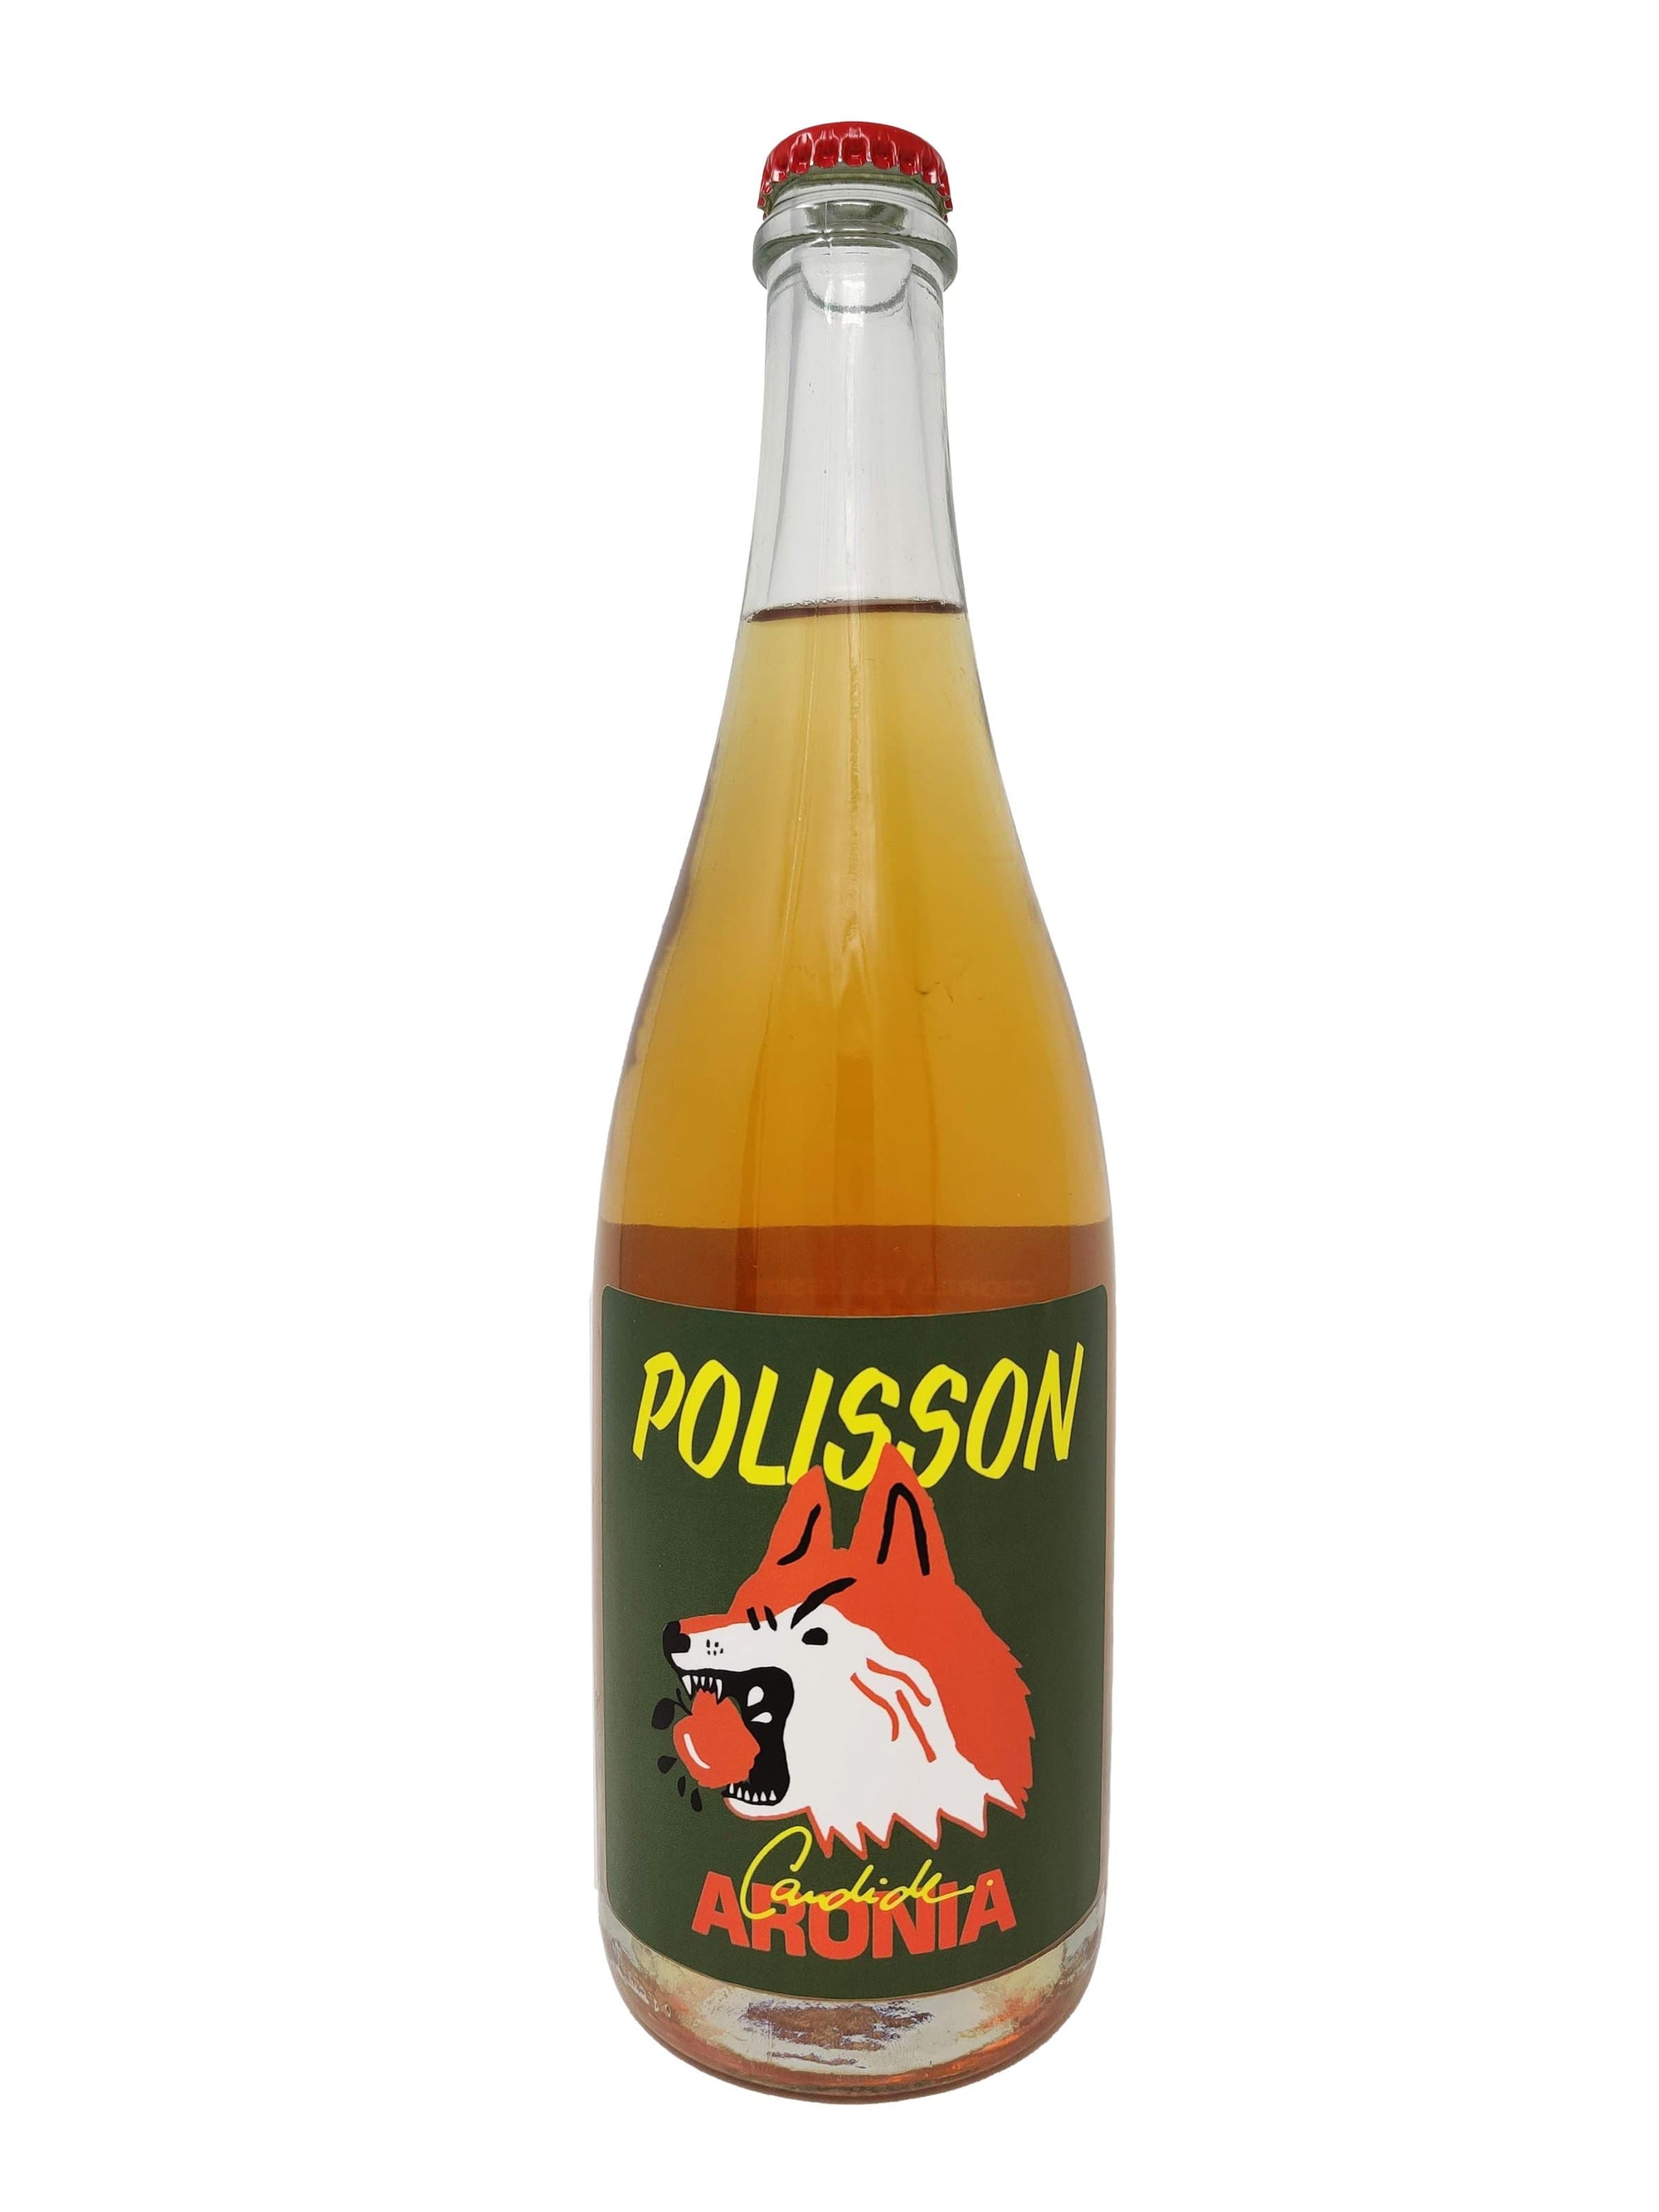 Cidres Polisson cidre Aronia - Cidre mousseux des Cidres Polisson